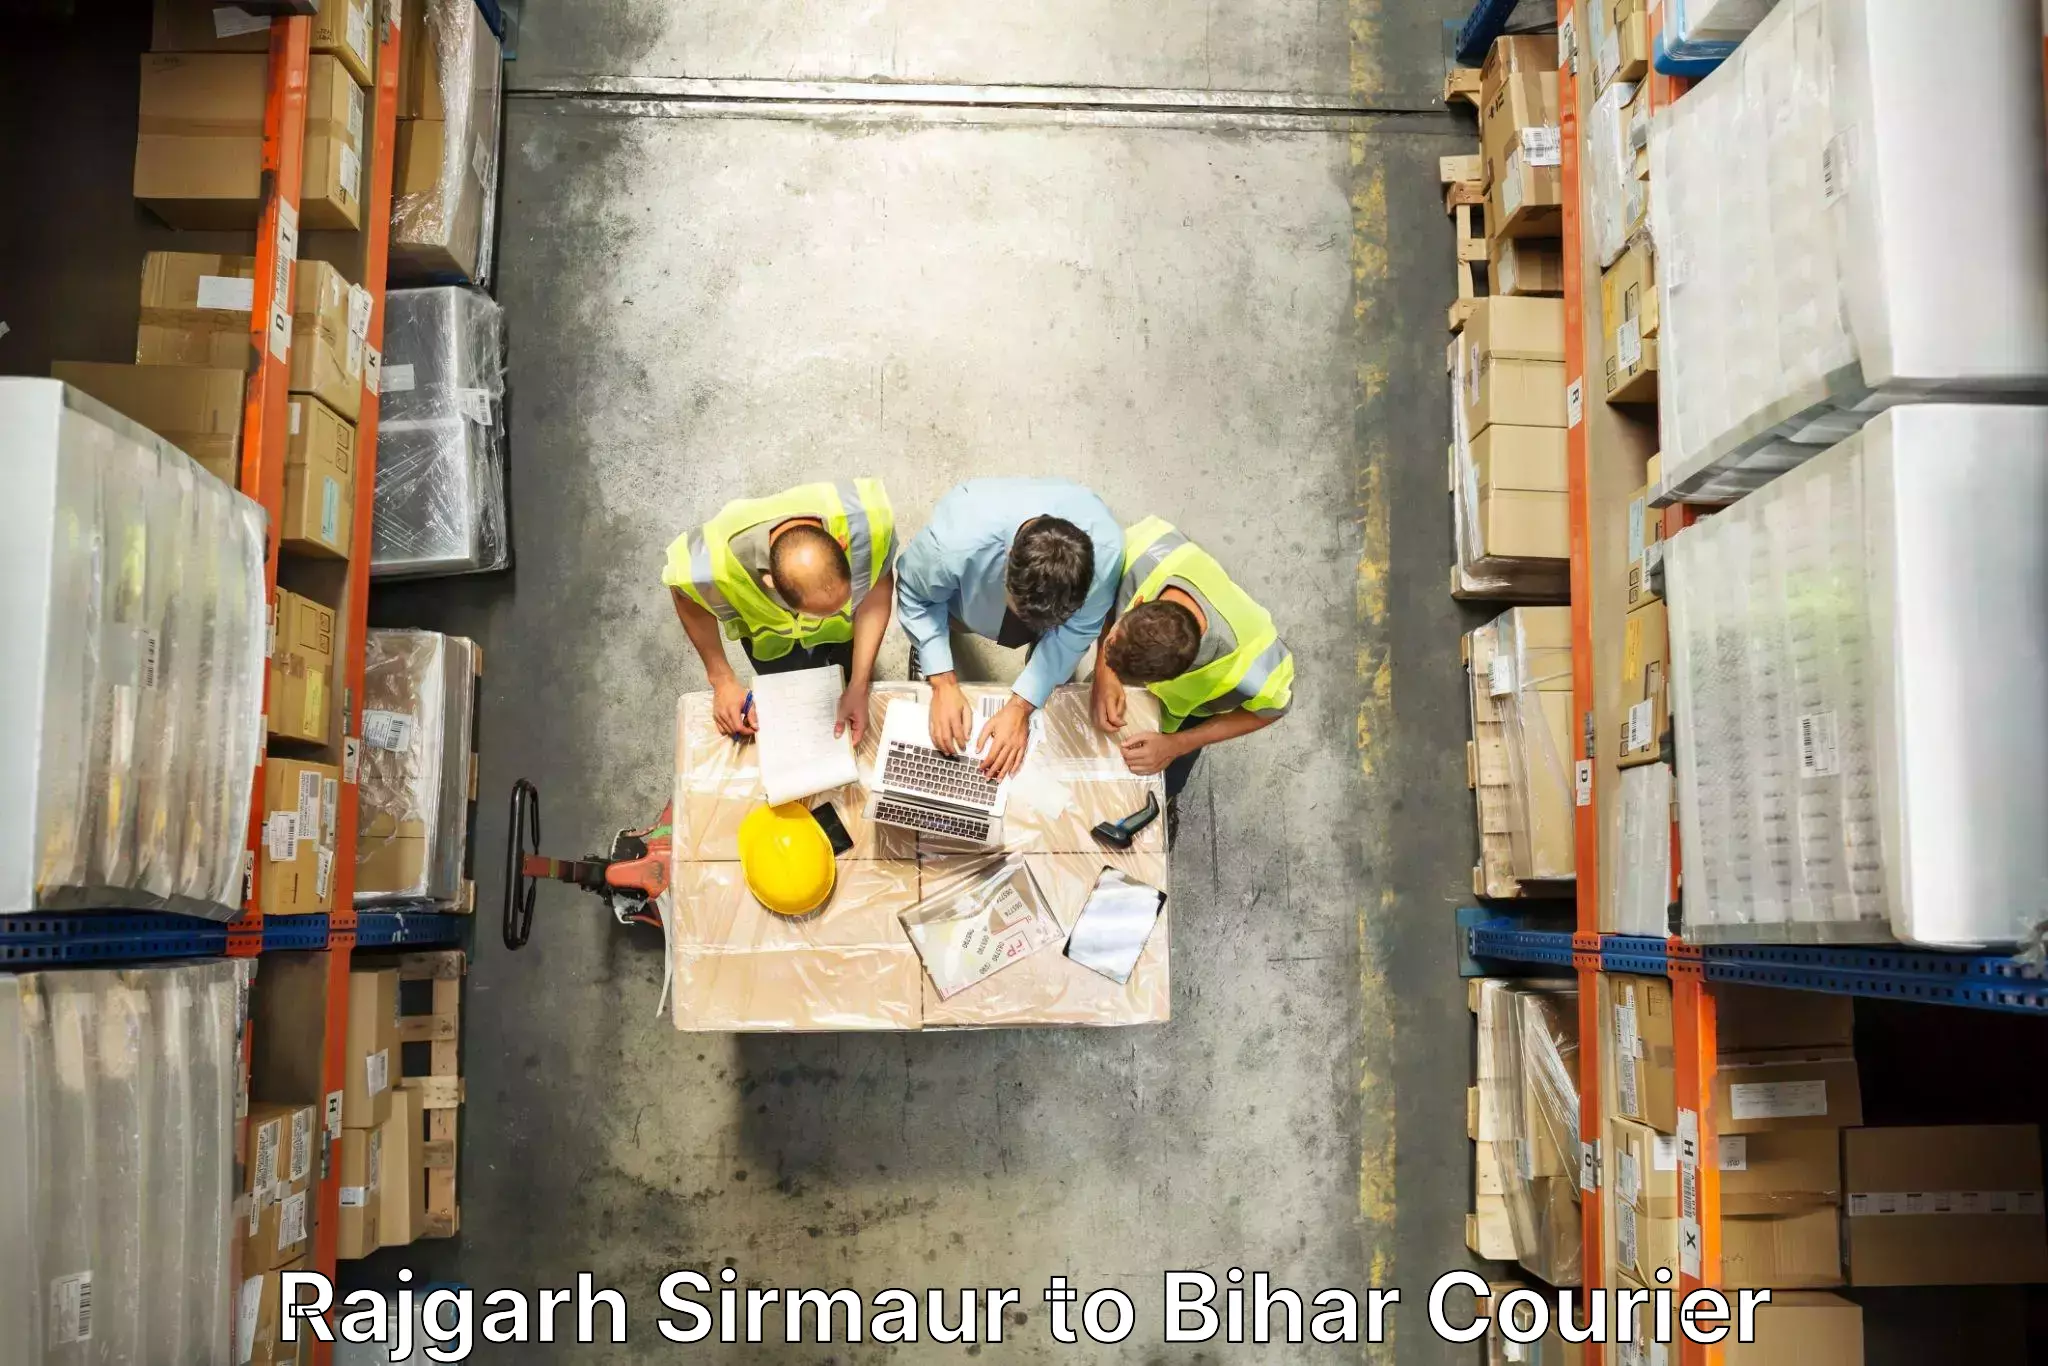 Furniture moving experts Rajgarh Sirmaur to Andar Siwan